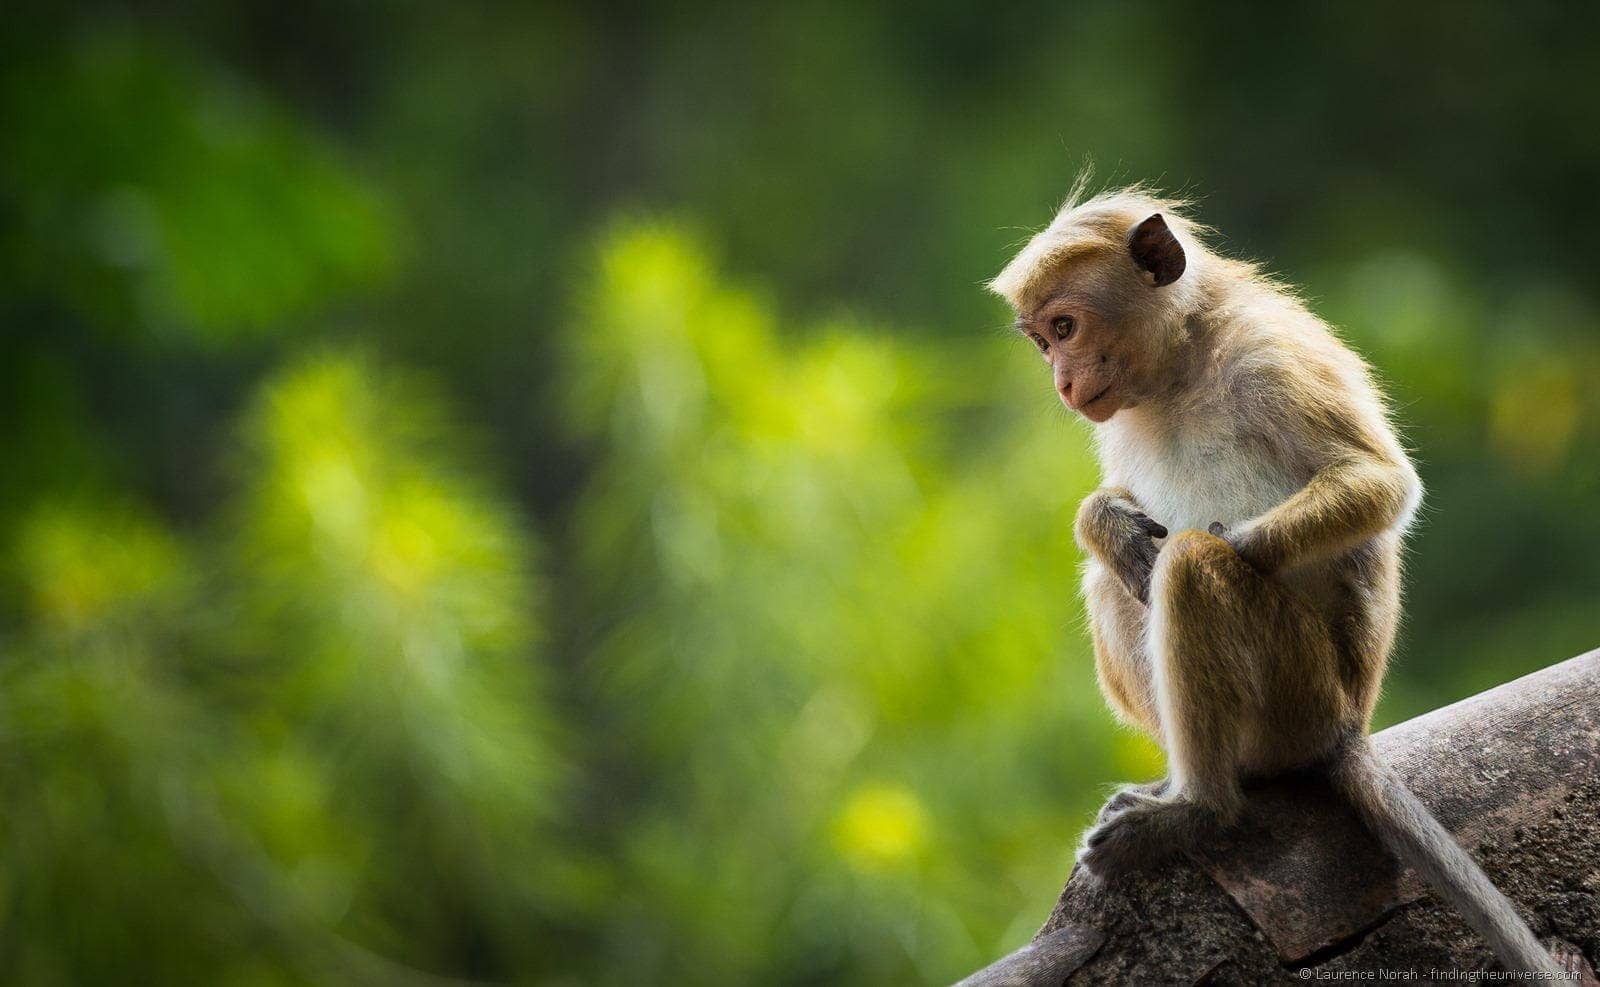 Monkey on roof Sri Lanka